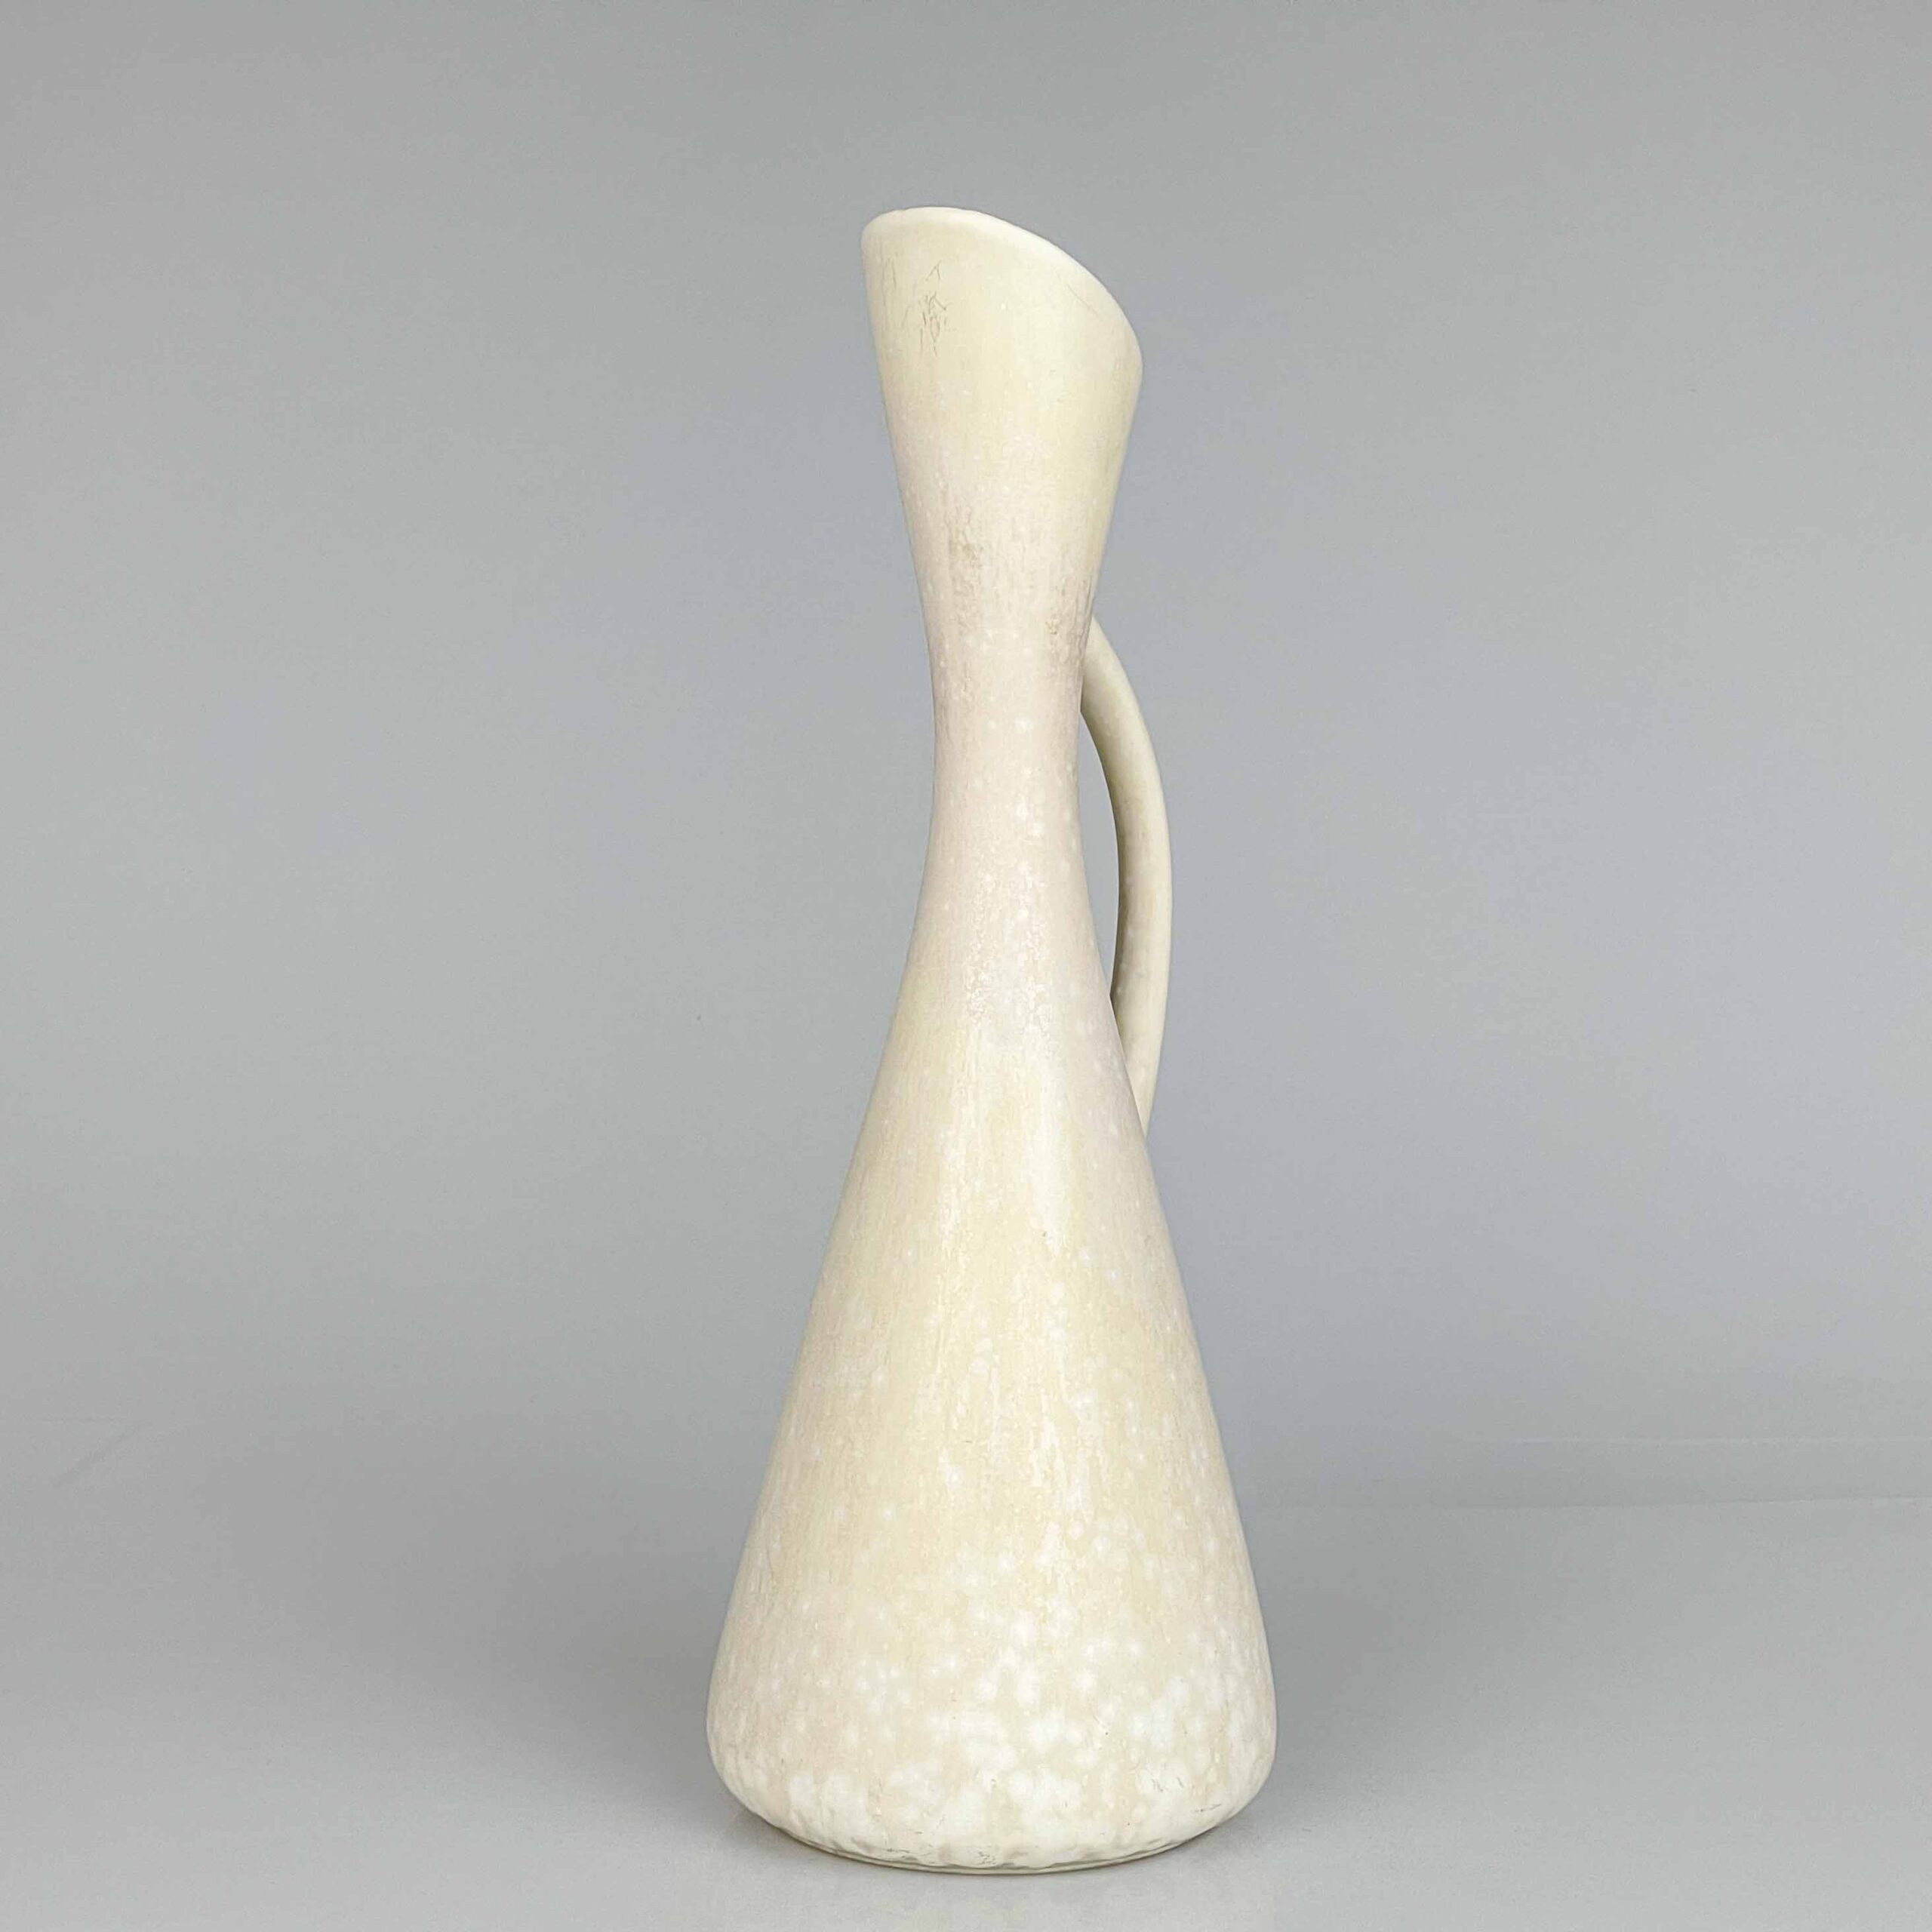 Gunnar Nylund - A glazed stoneware vase / pitcher, model AUD - Rörstrand Sweden, ca. 1955